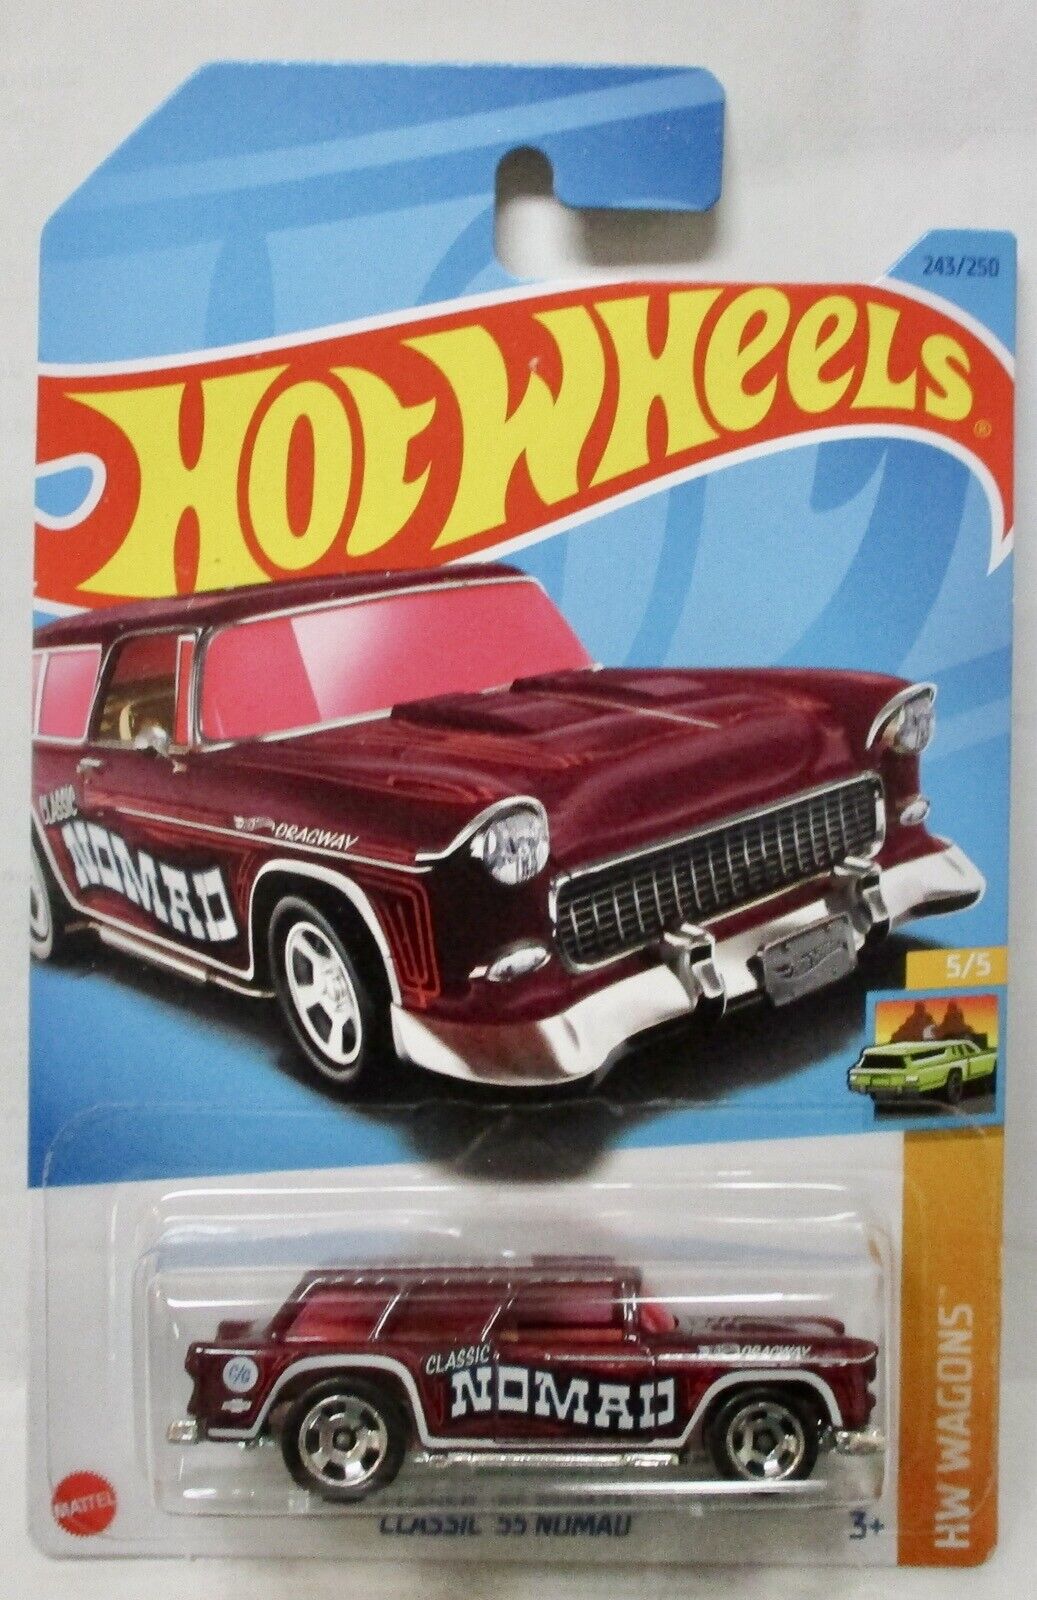 2023 Hot Wheels Classic '55 Nomad HW Wagons 5/5, 243/250